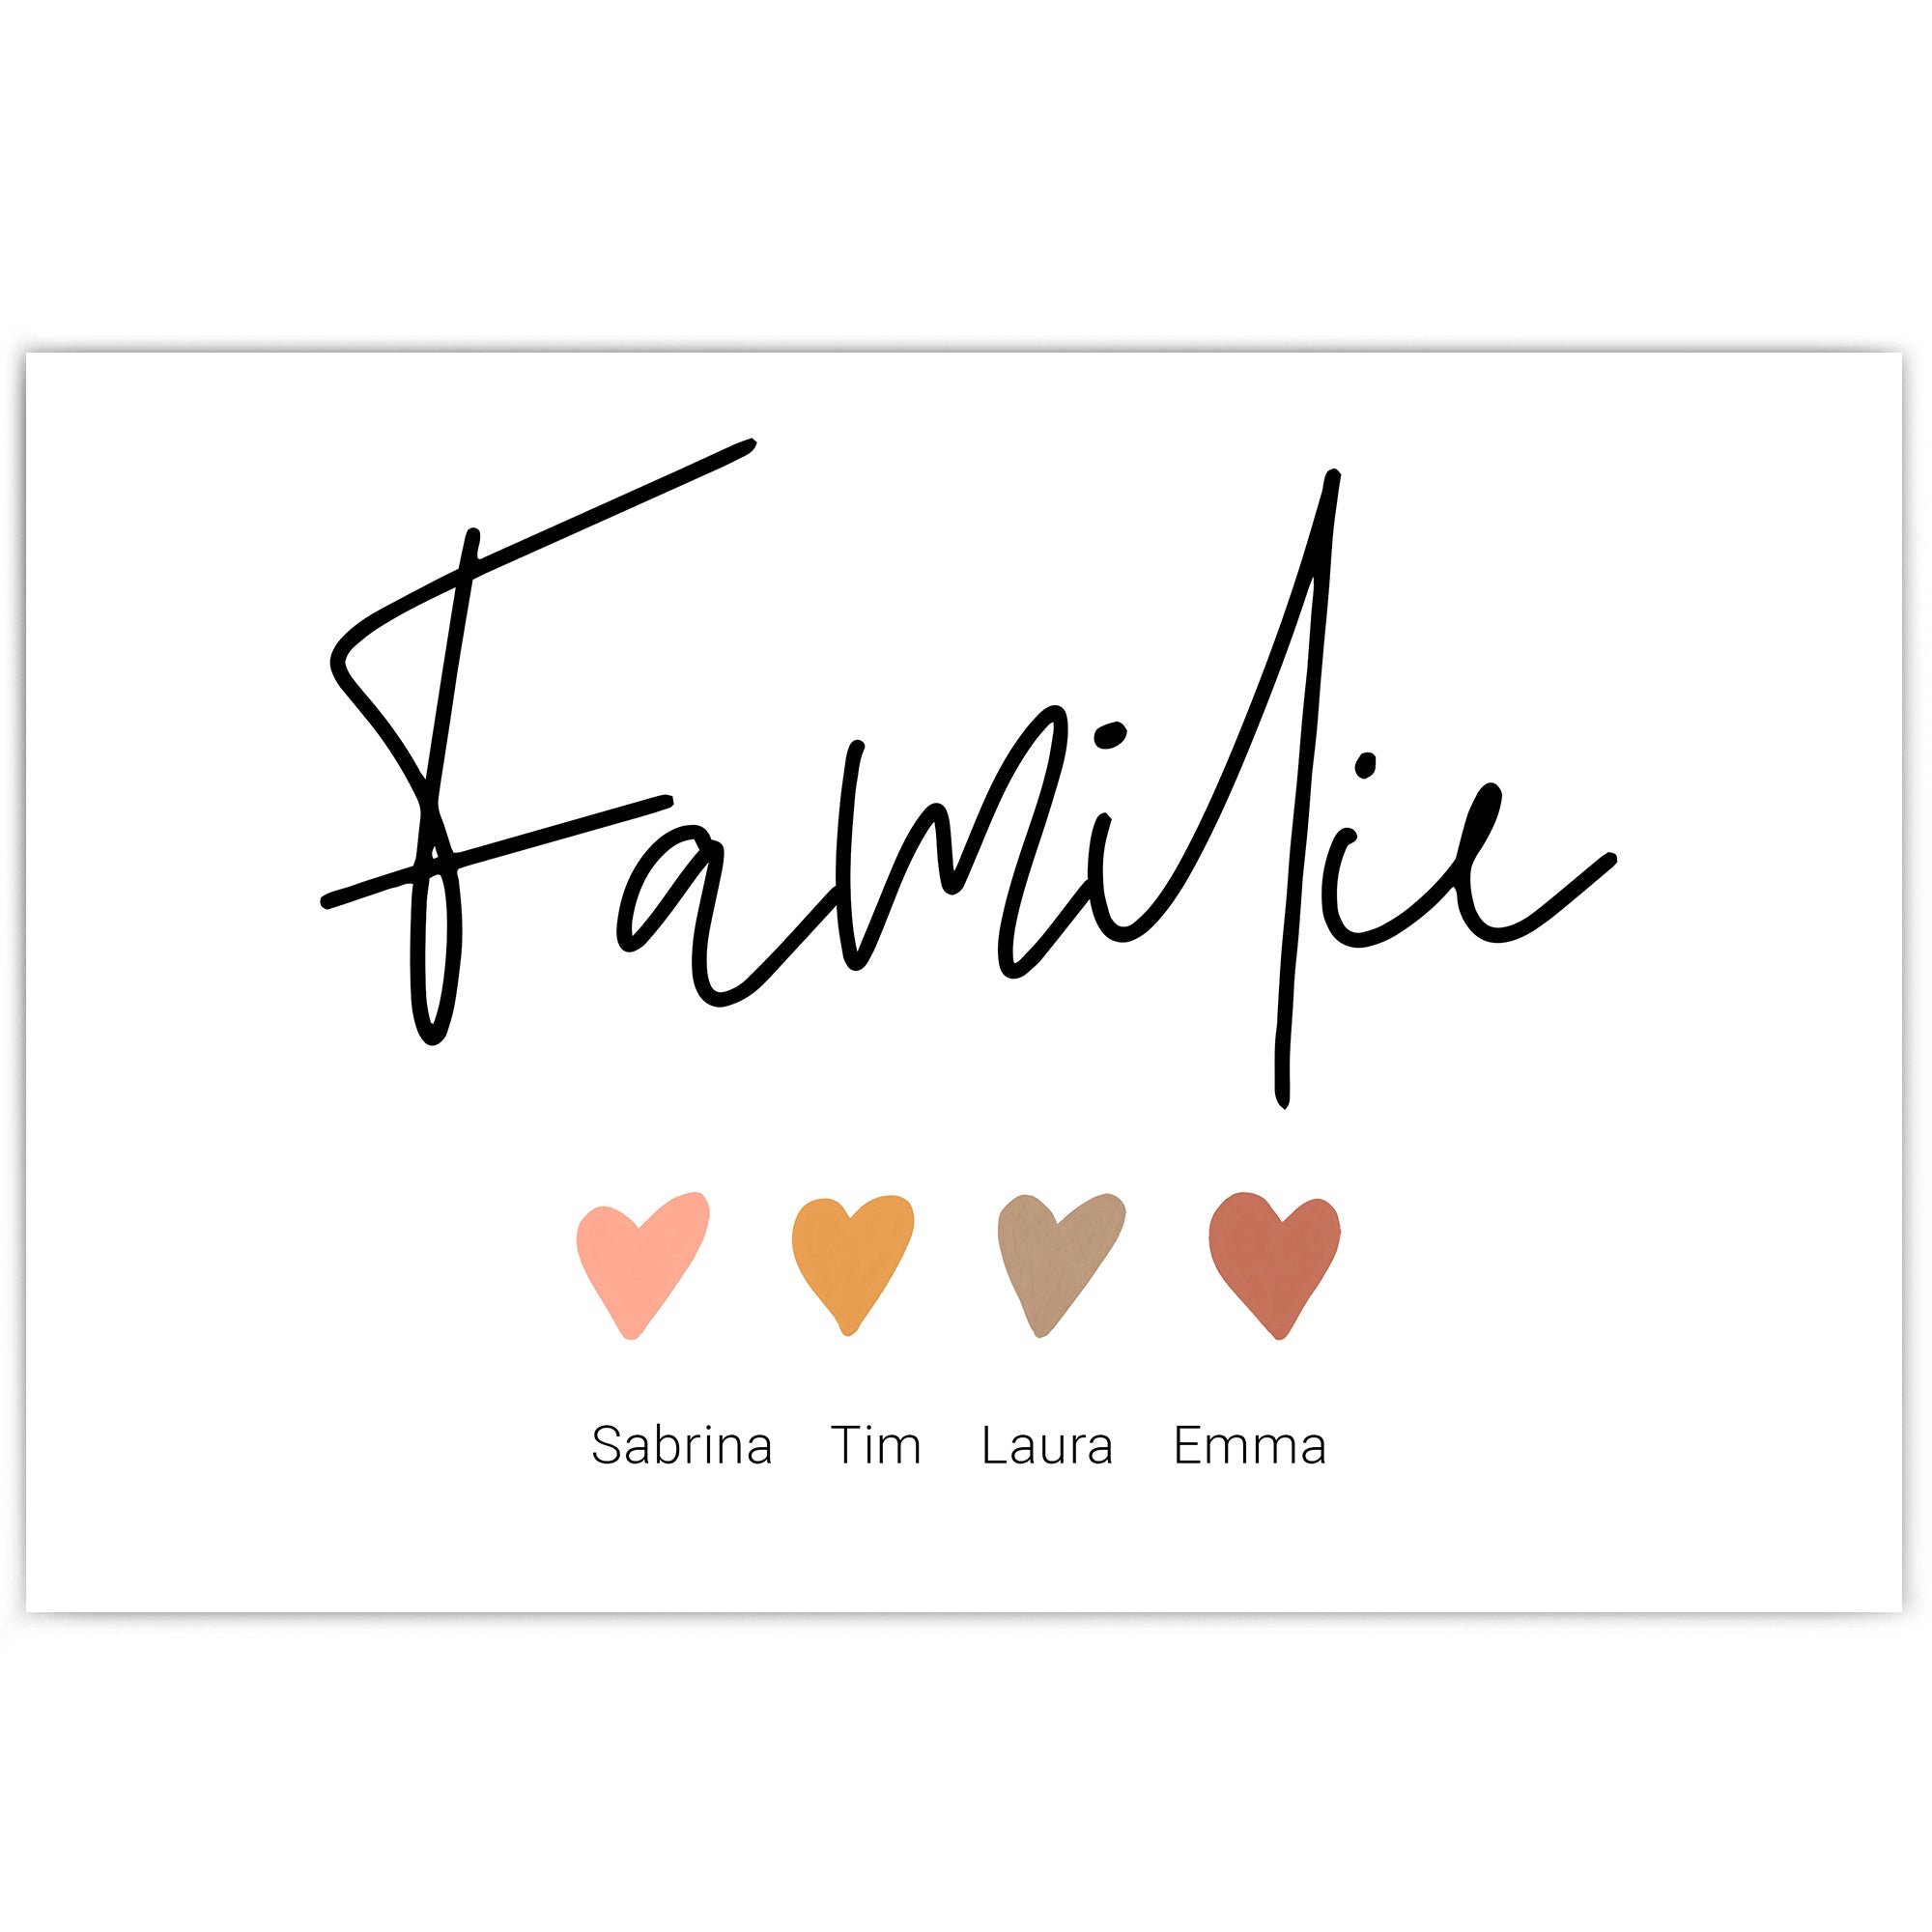 Personalisiertes Familie Poster im Querformat. Familie mit Herzen und individuellen Namen darunter.